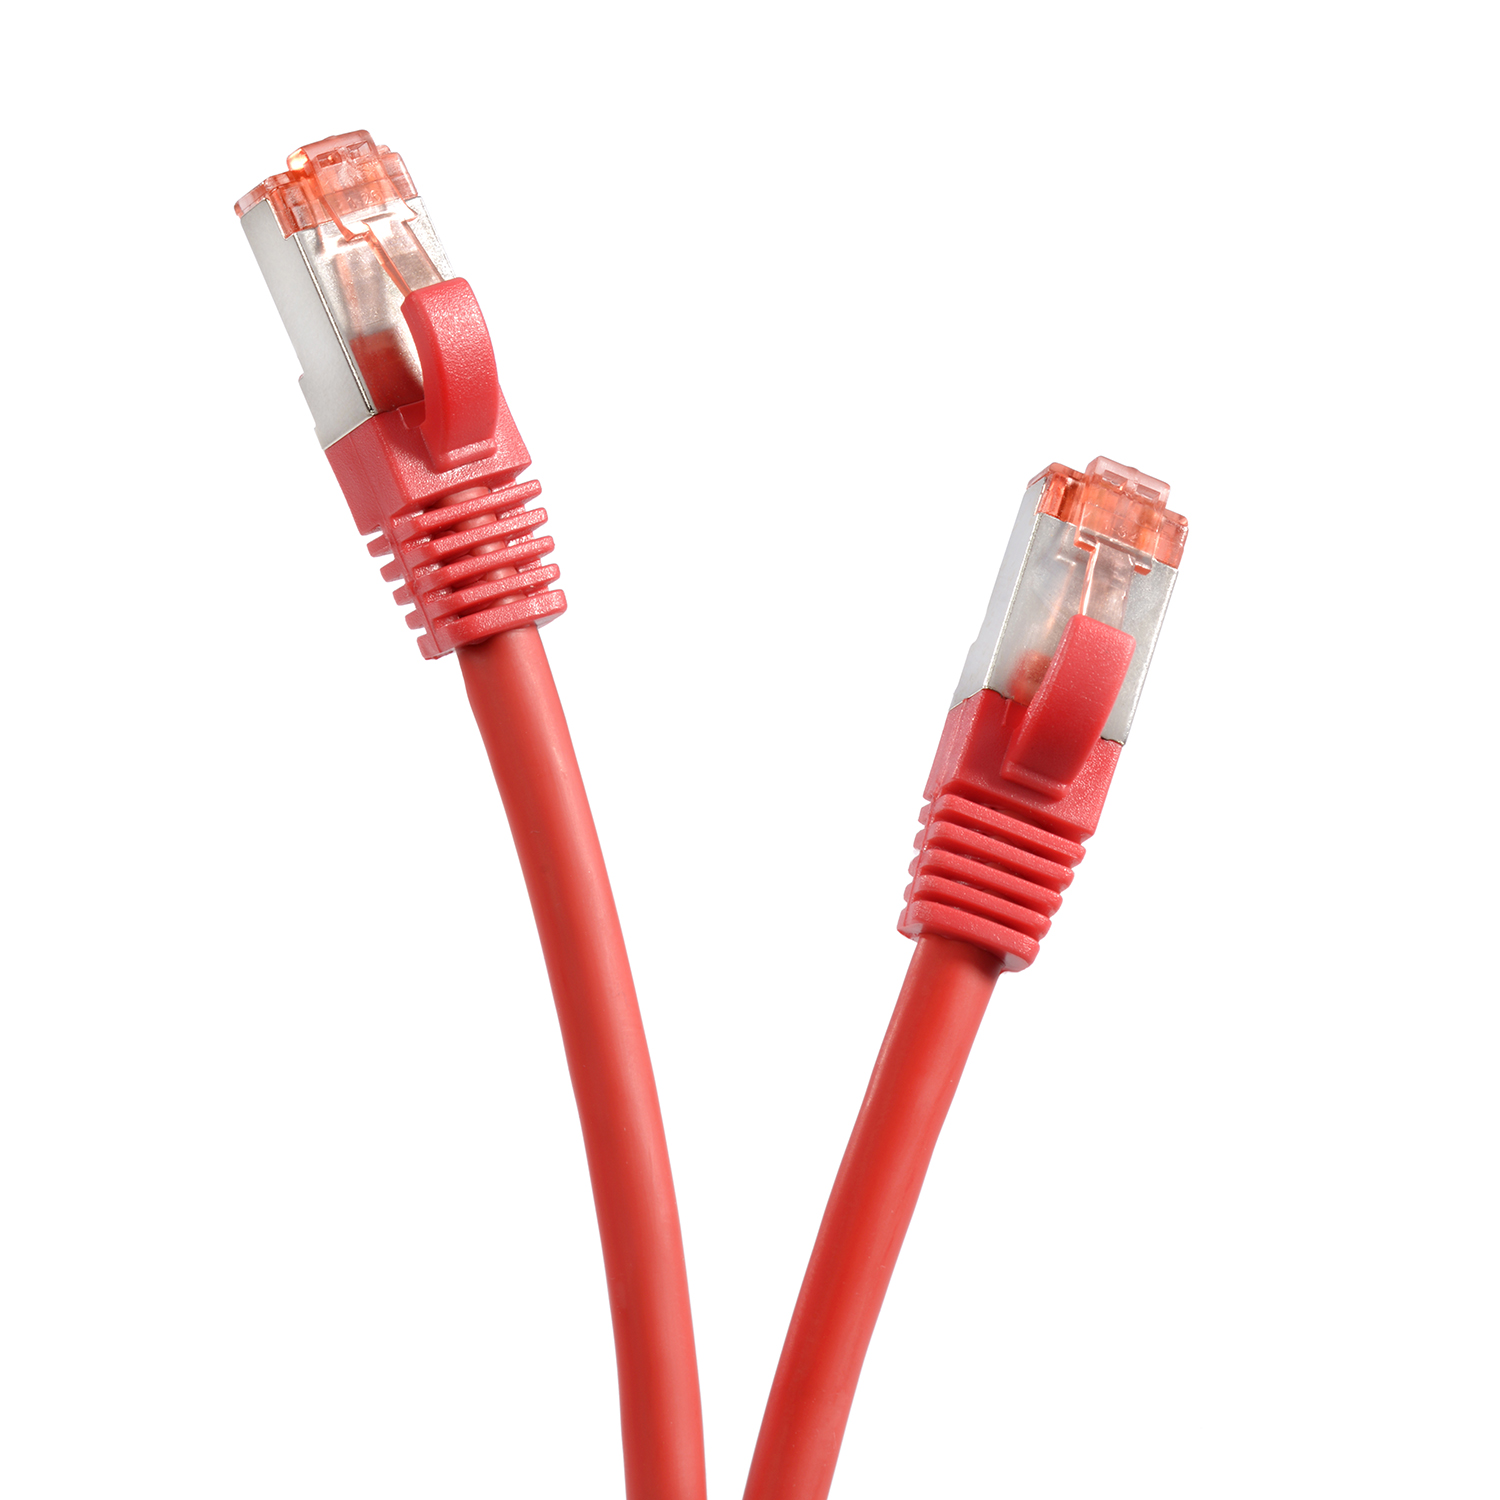 S/FTP rot, 2 Patchkabel m 1000Mbit, / Netzwerkkabel, TPFNET 2m Netzwerkkabel